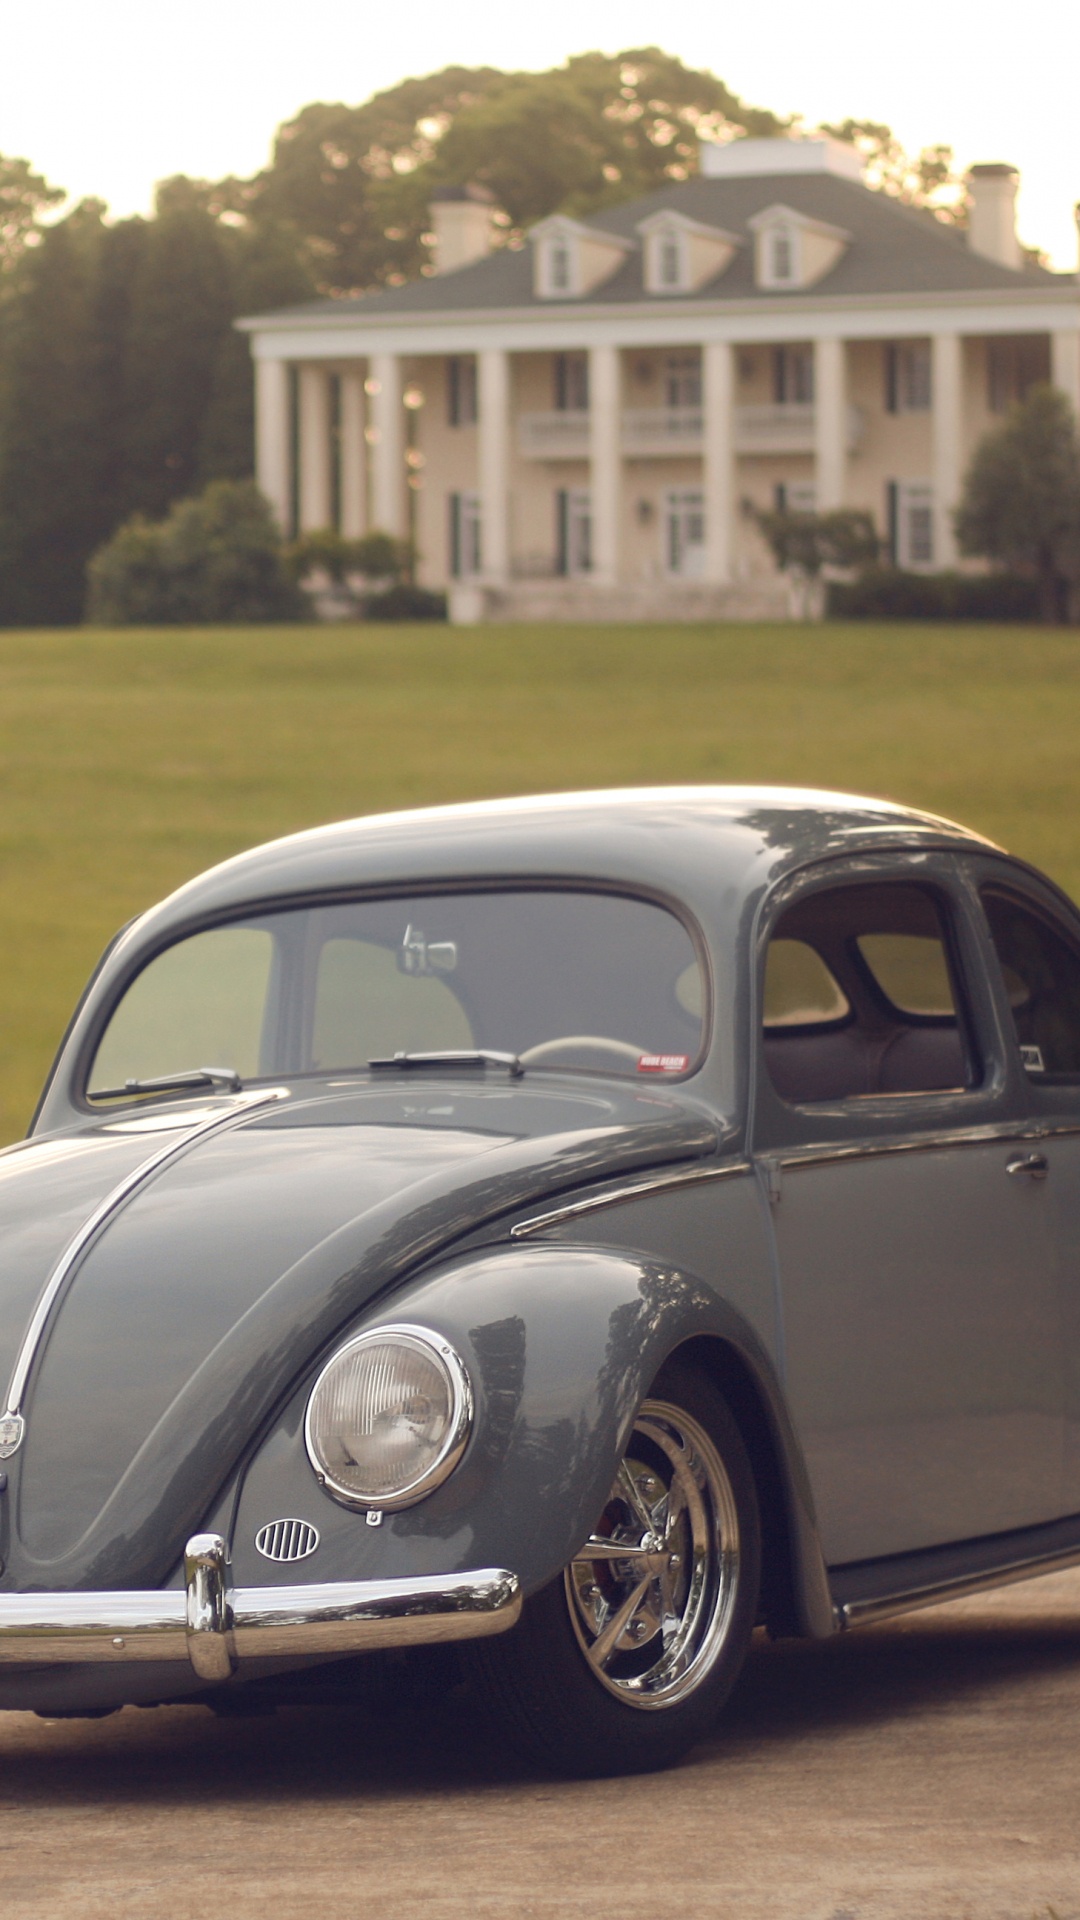 Volkswagen Beetle Noir Sur Terrain D'herbe Verte Pendant la Journée. Wallpaper in 1080x1920 Resolution